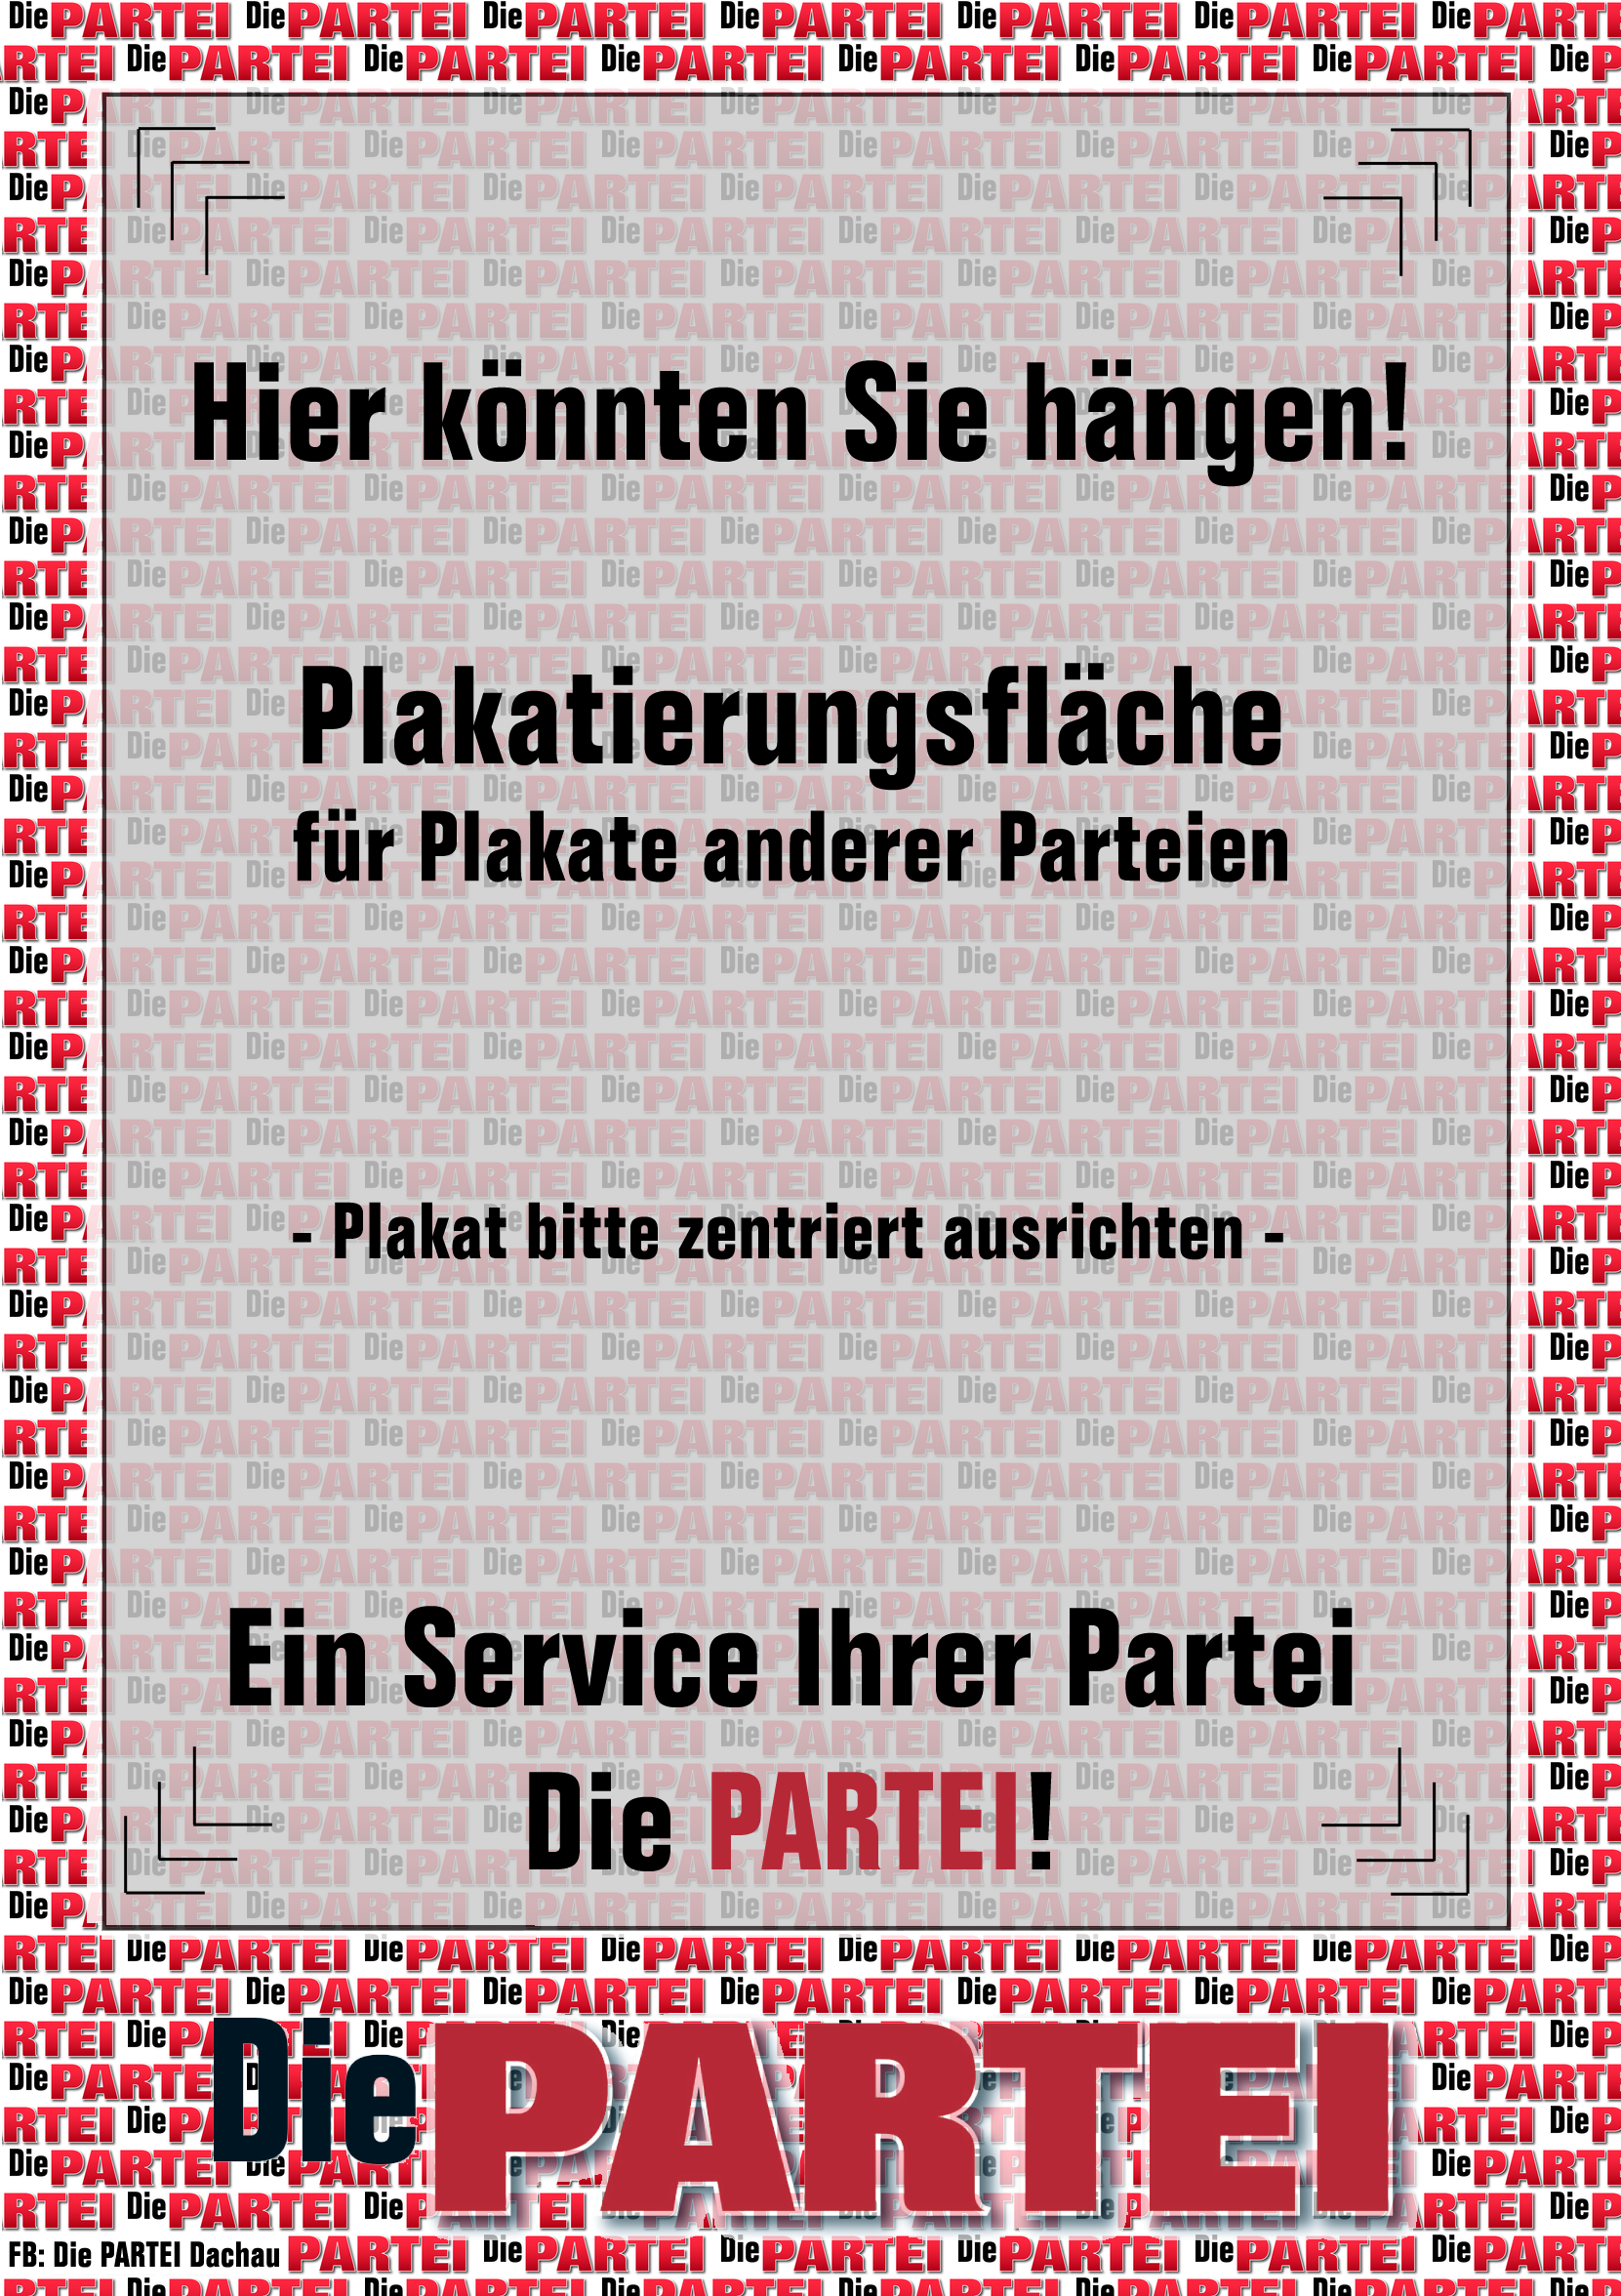 PARTEIPlakat_Platzhalter 01.png -
                                1661x2352 - 1.08 MB